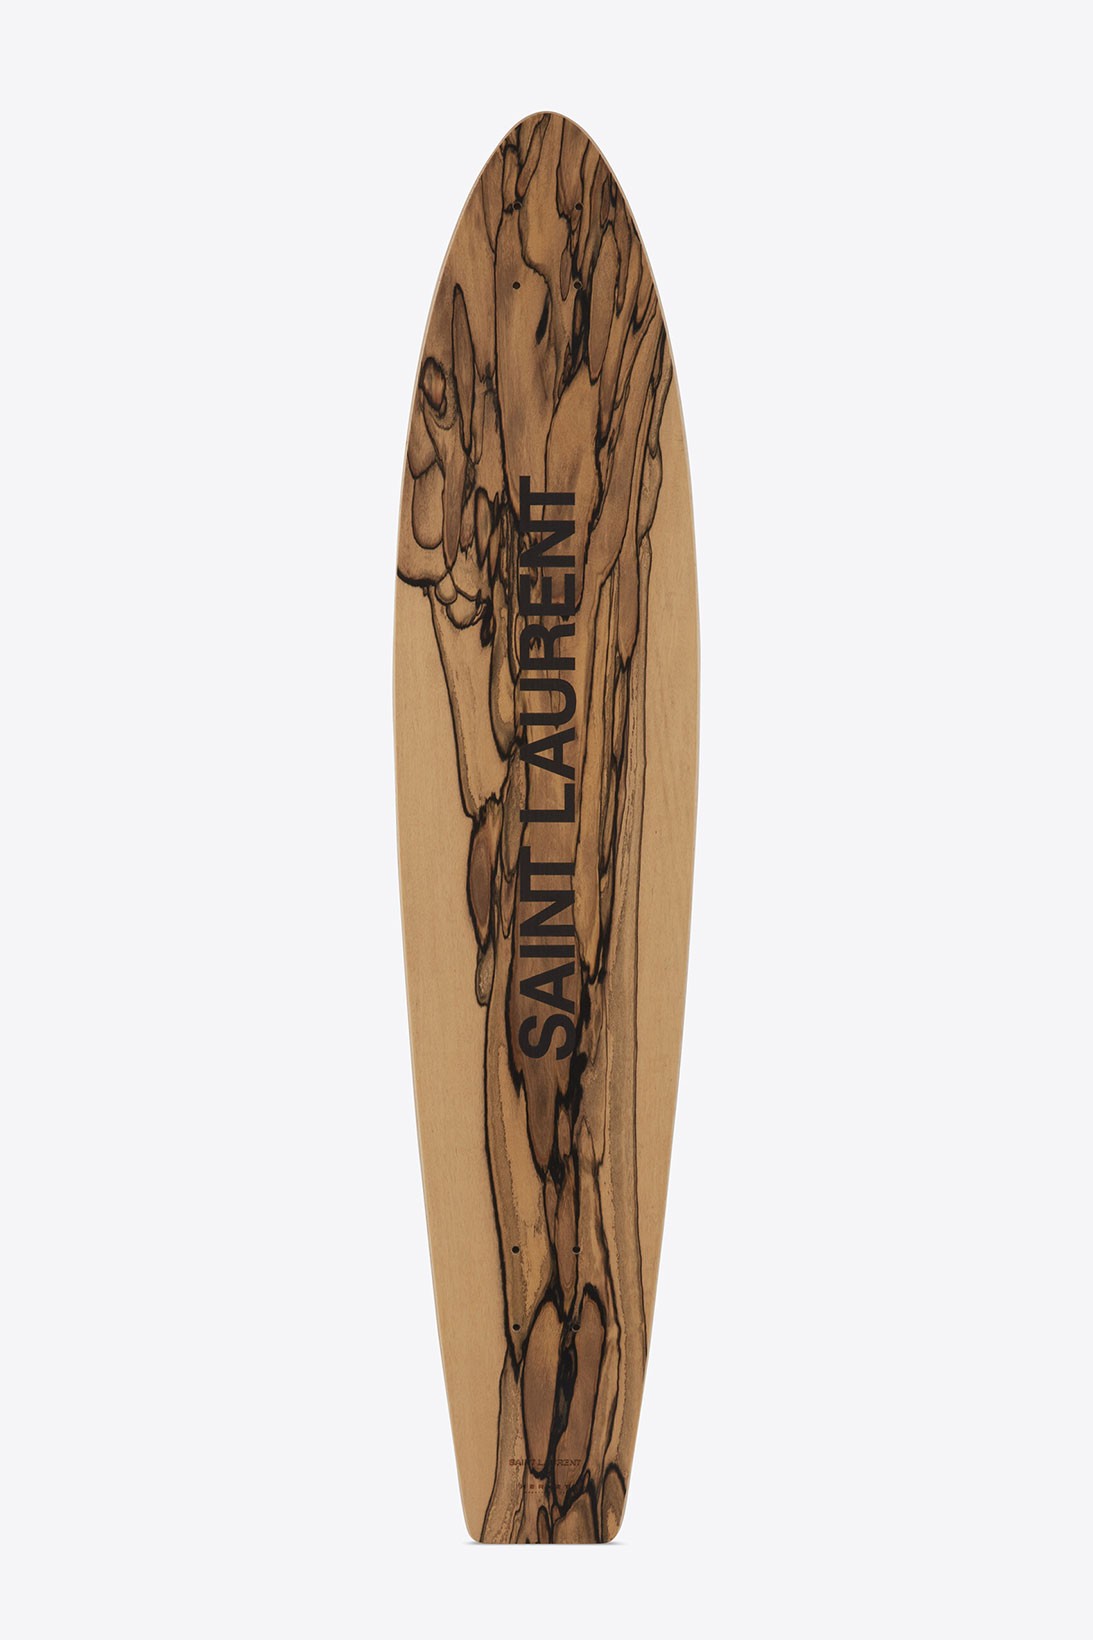 Saint Laurent представил новые модели досок для серфинга (фото 6)